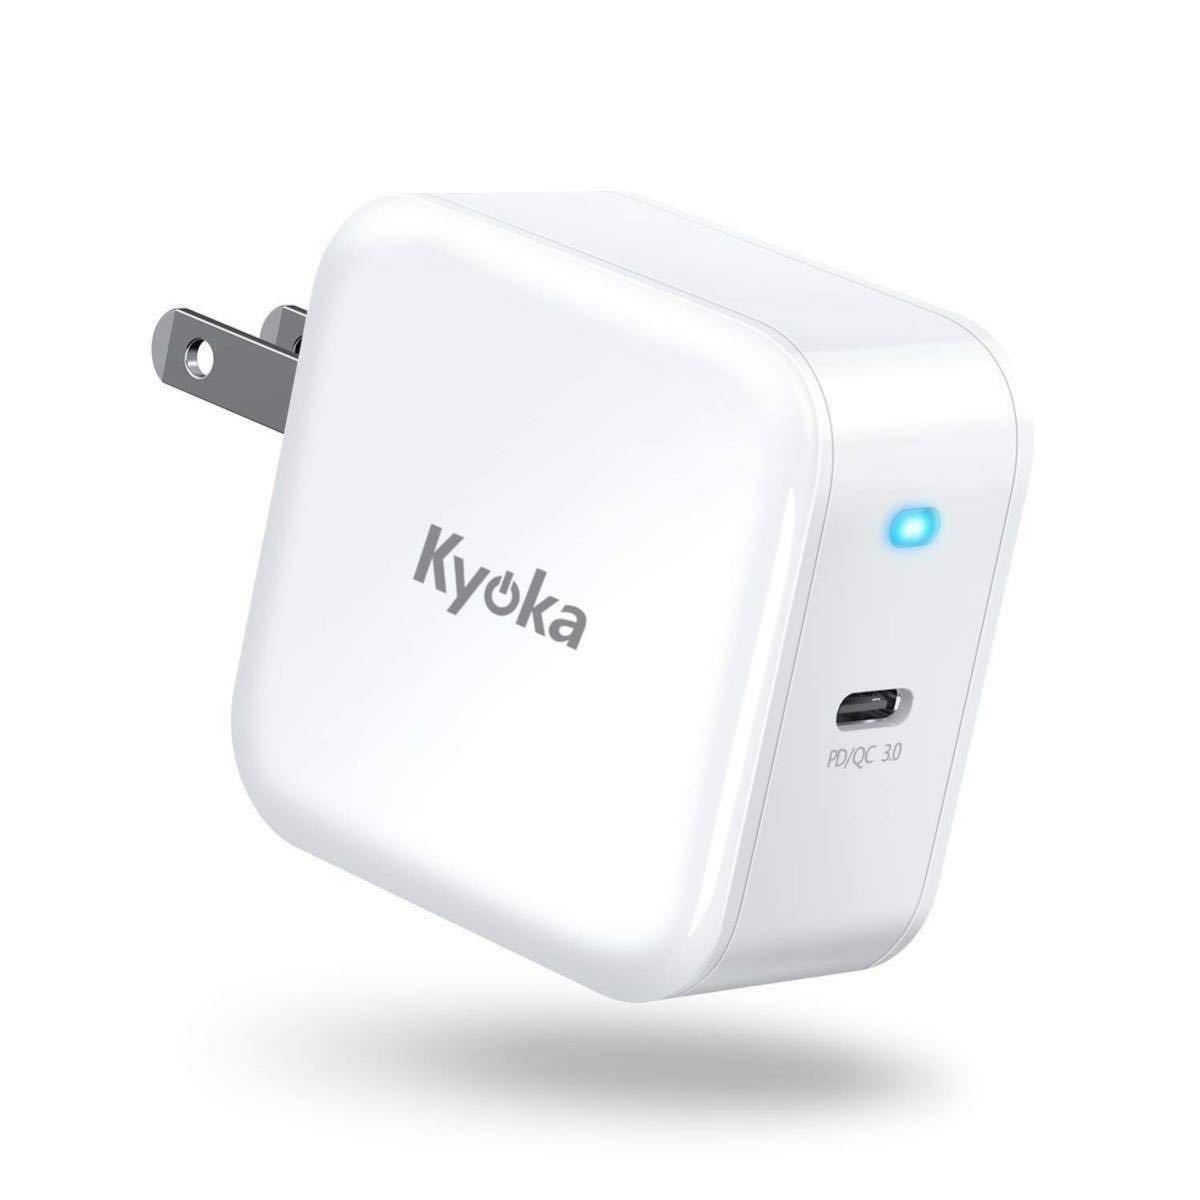 【美品】【Kyoka】 USB-C 充電器 (ホワイト 1ポート) PD-30W コンパクト 軽量 折畳式プラグ 急速 PSE認証済 幅広い互換性 _画像1